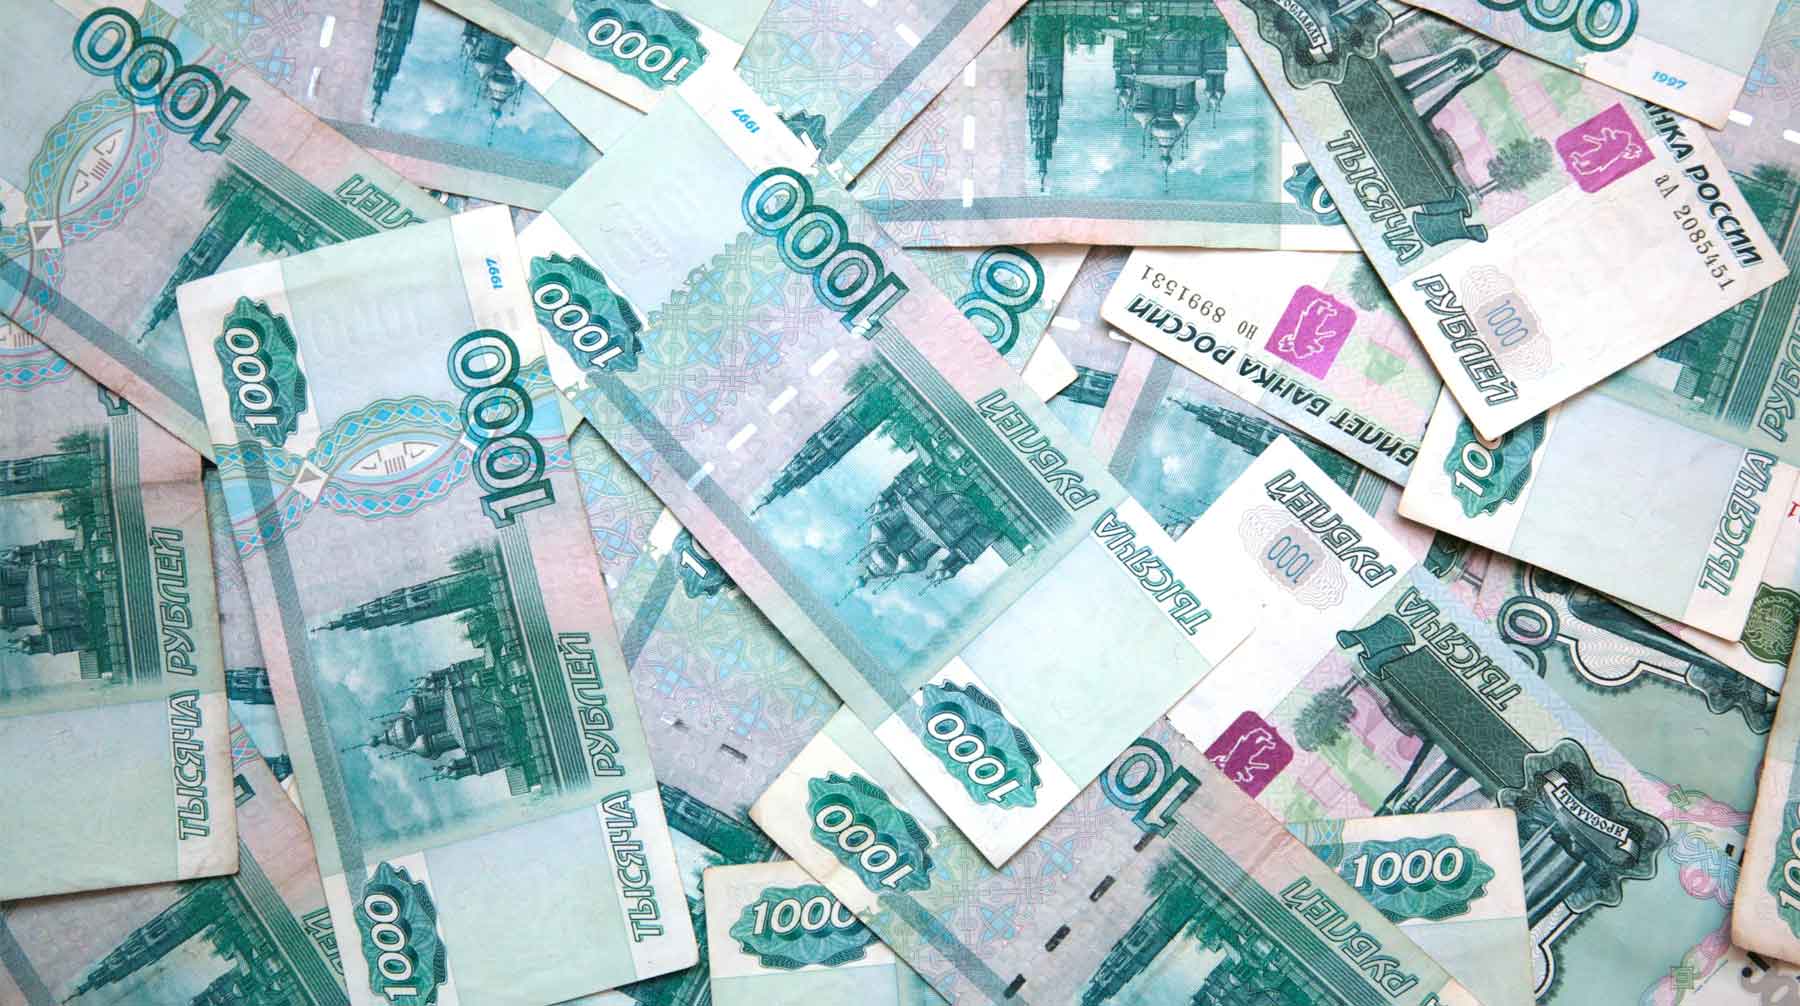 Фигурантам расследования вместо растраты 7,5 миллиарда рублей вменяют хищение более 200 миллиардов рублей Фото: © GLOBAL LOOK press / Natalya Loginova